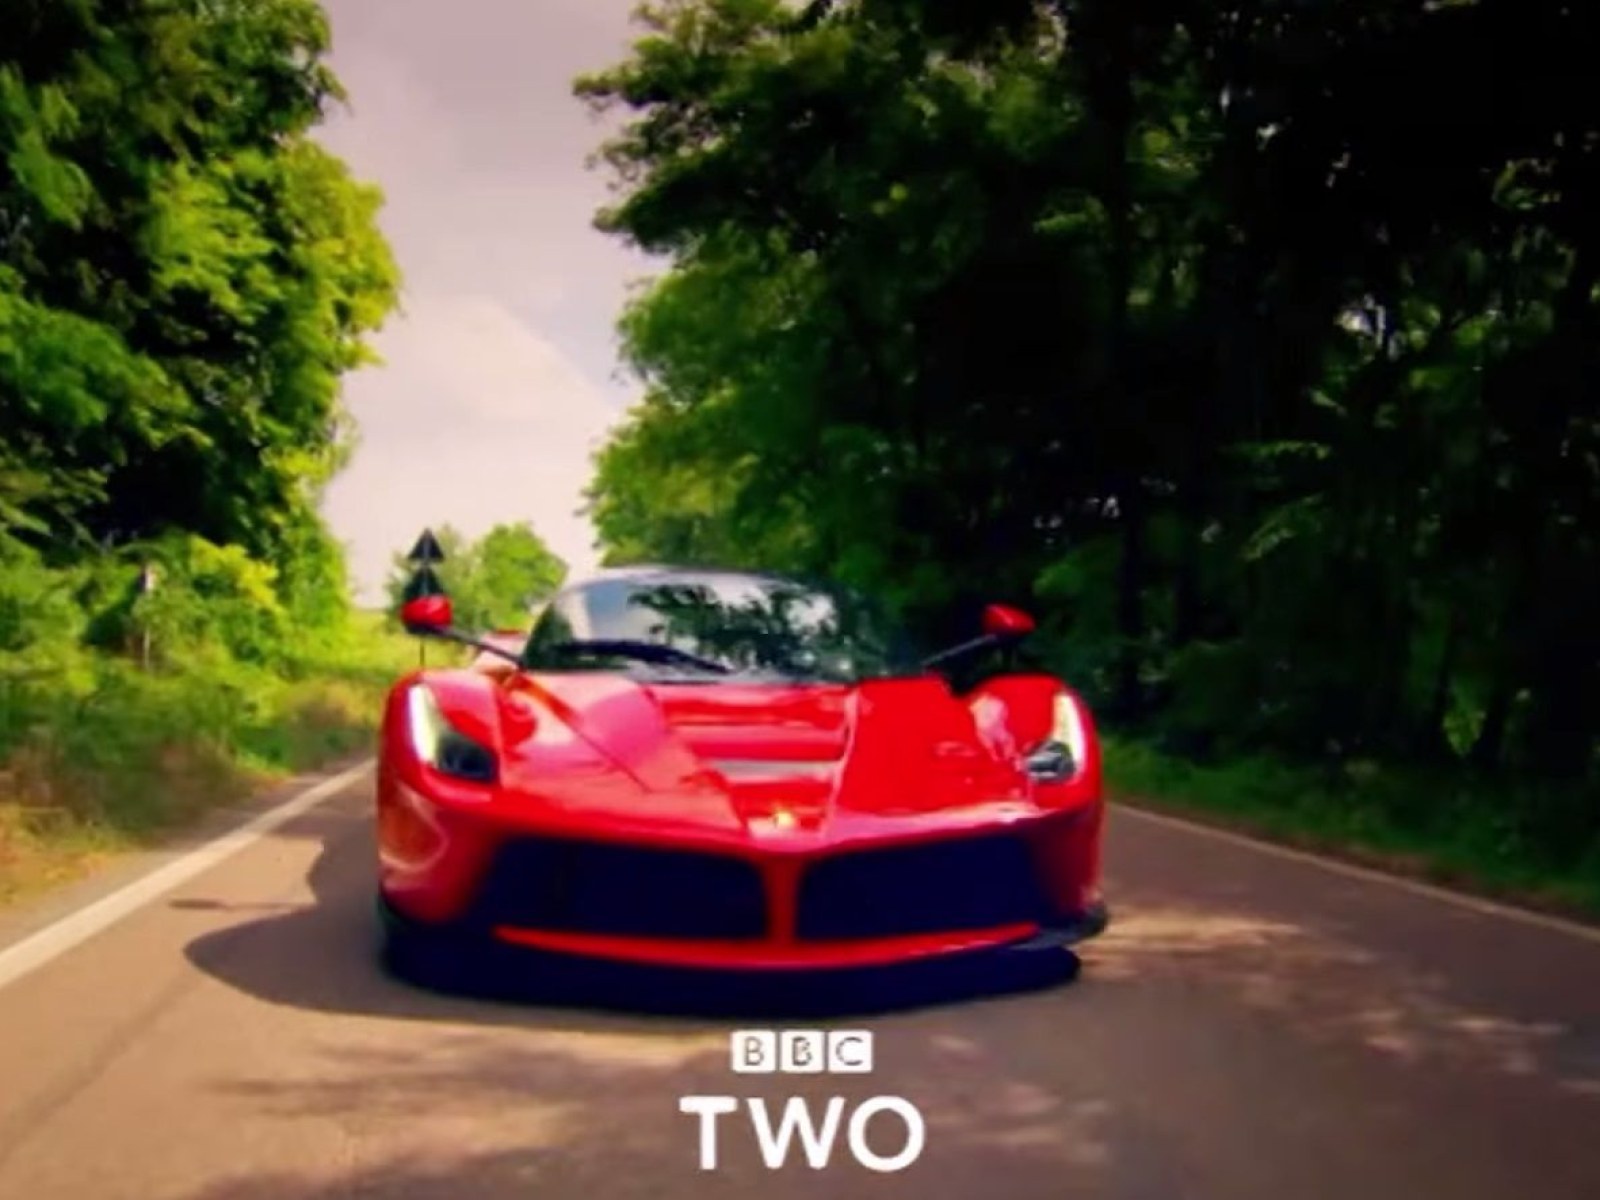 Top Gear' Season 22 5 Online: La Ferrari, Corvette Vs. GTS, And More [PREVIEW VIDEO]